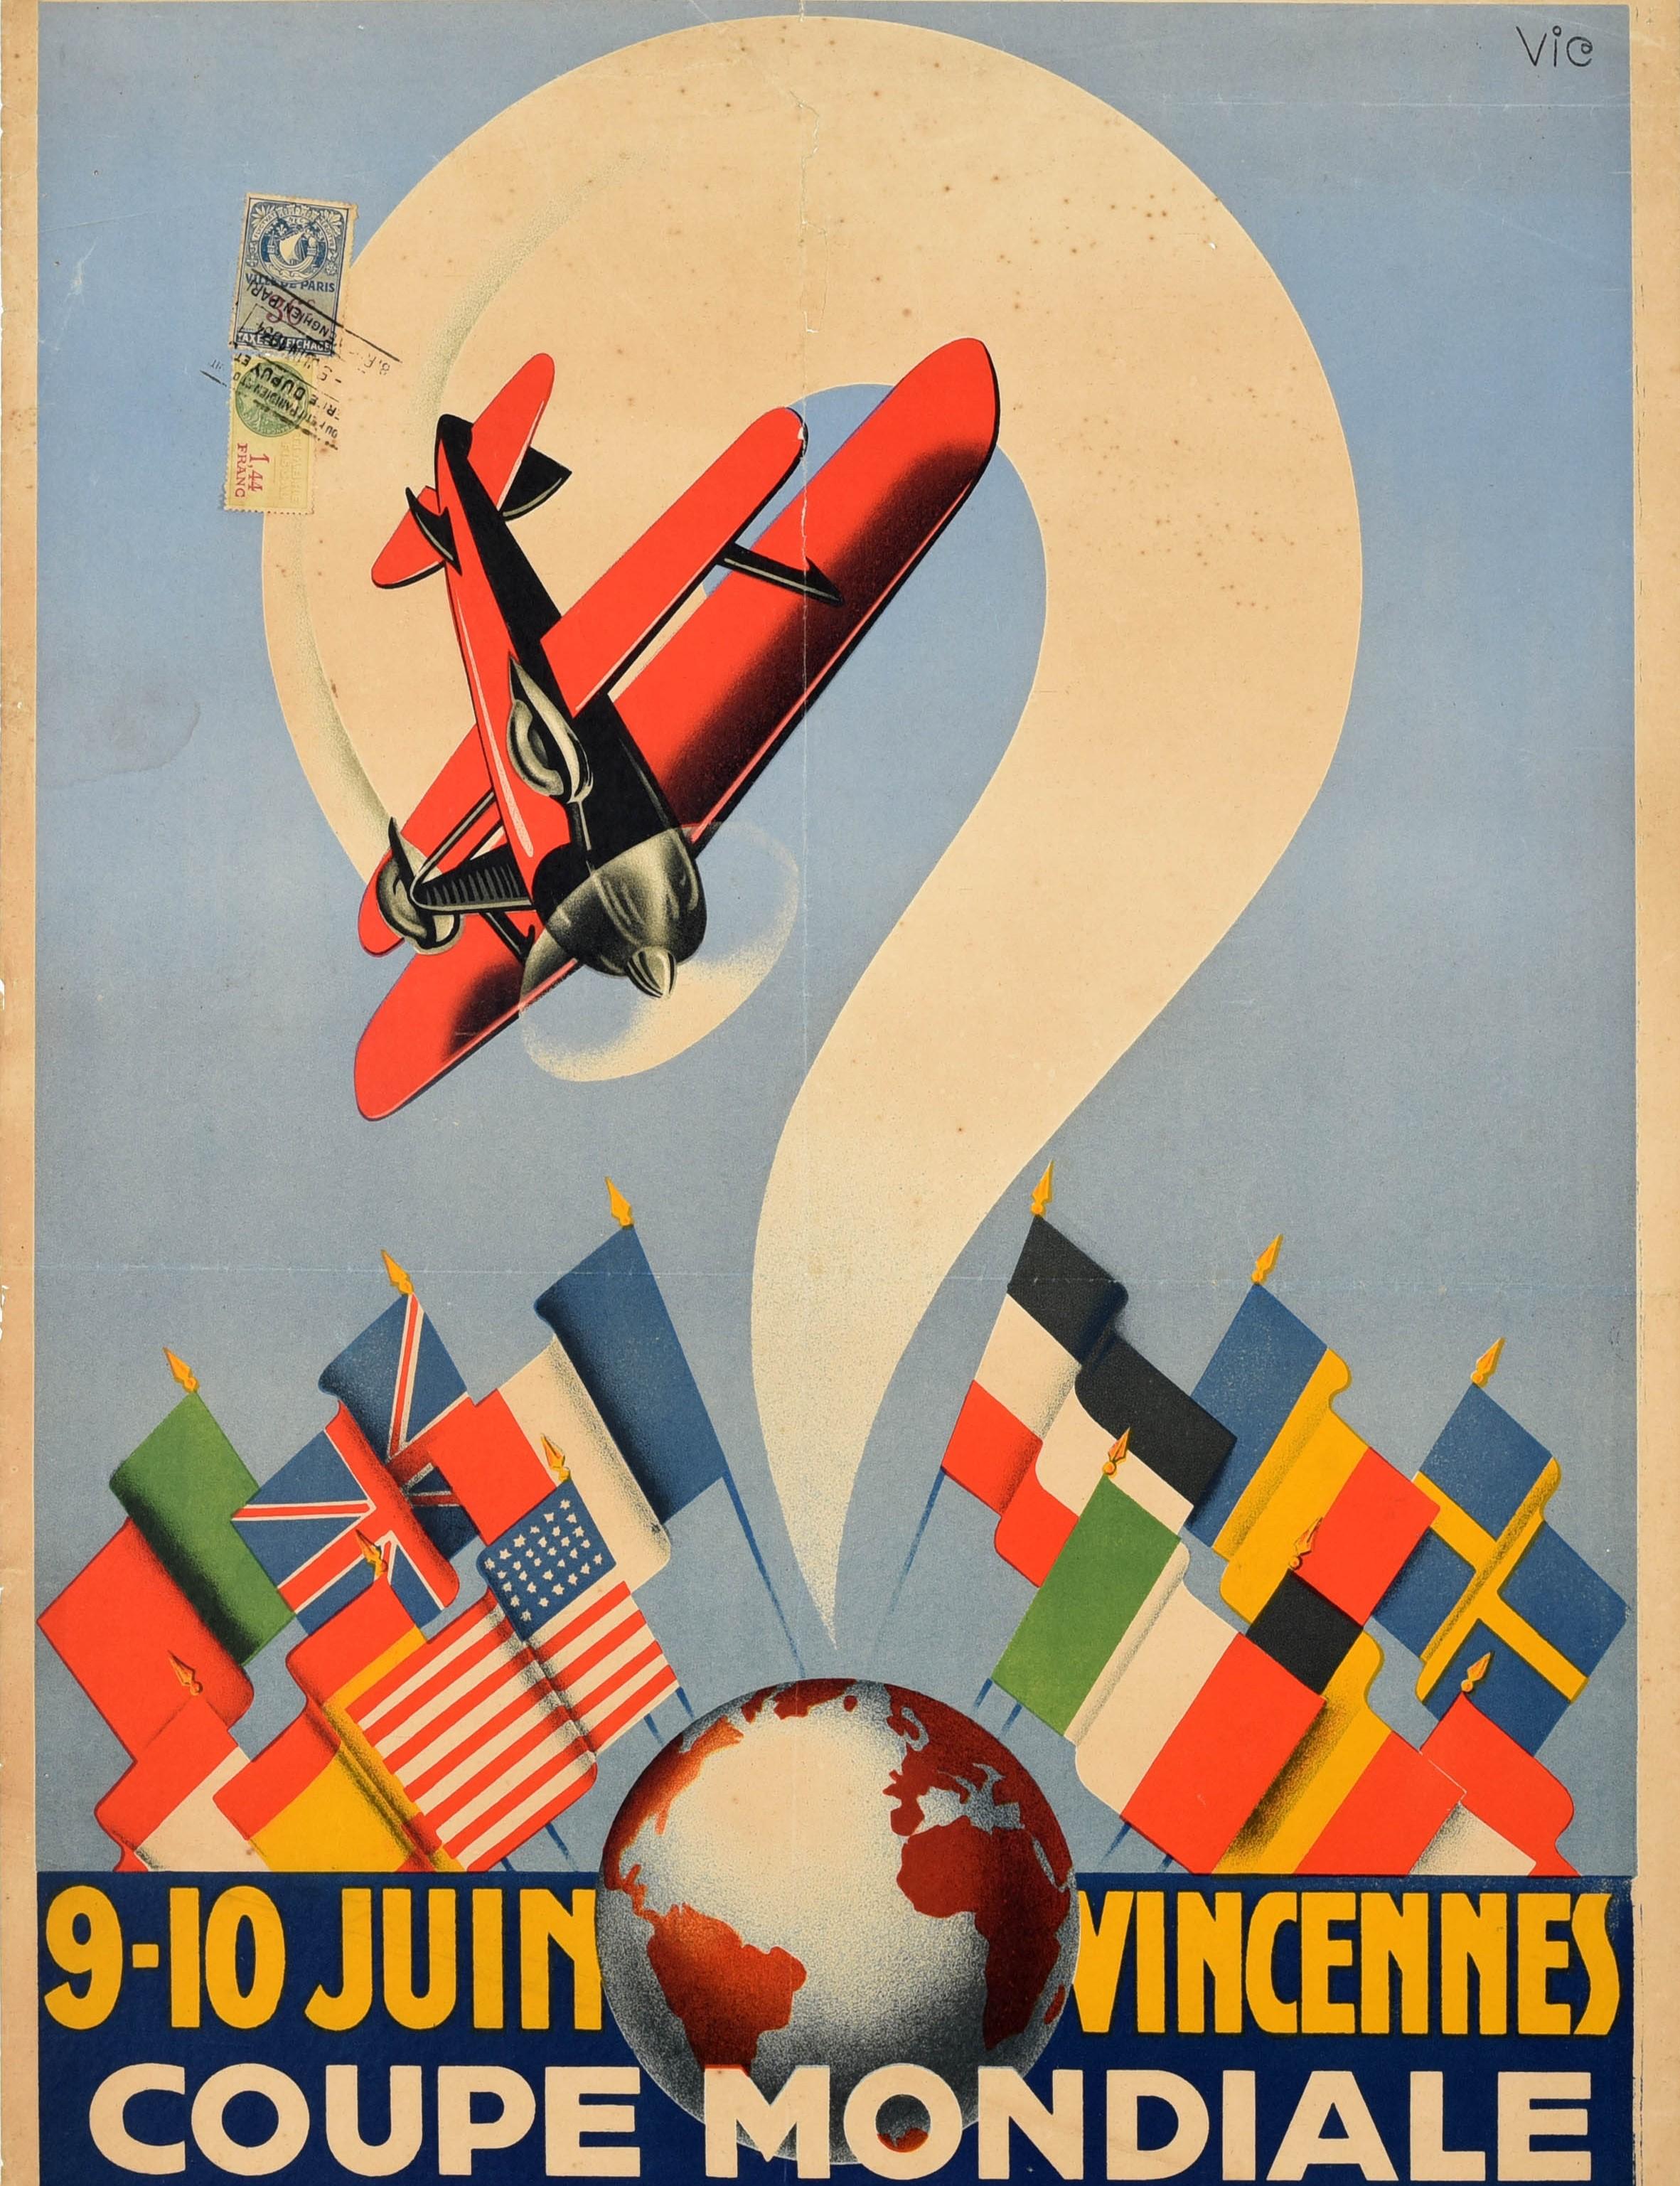 Affiche originale de sport aérien vintage pour la Coupe Mondiale d'Acrobatie Aérienne qui s'est tenue les 9 et 10 juin à Vincennes Paris, organisée par la Propagande Aérienne avec le journal Le Petit Parisien - Coupe Mondiale d'Acrobatie Aérienne -